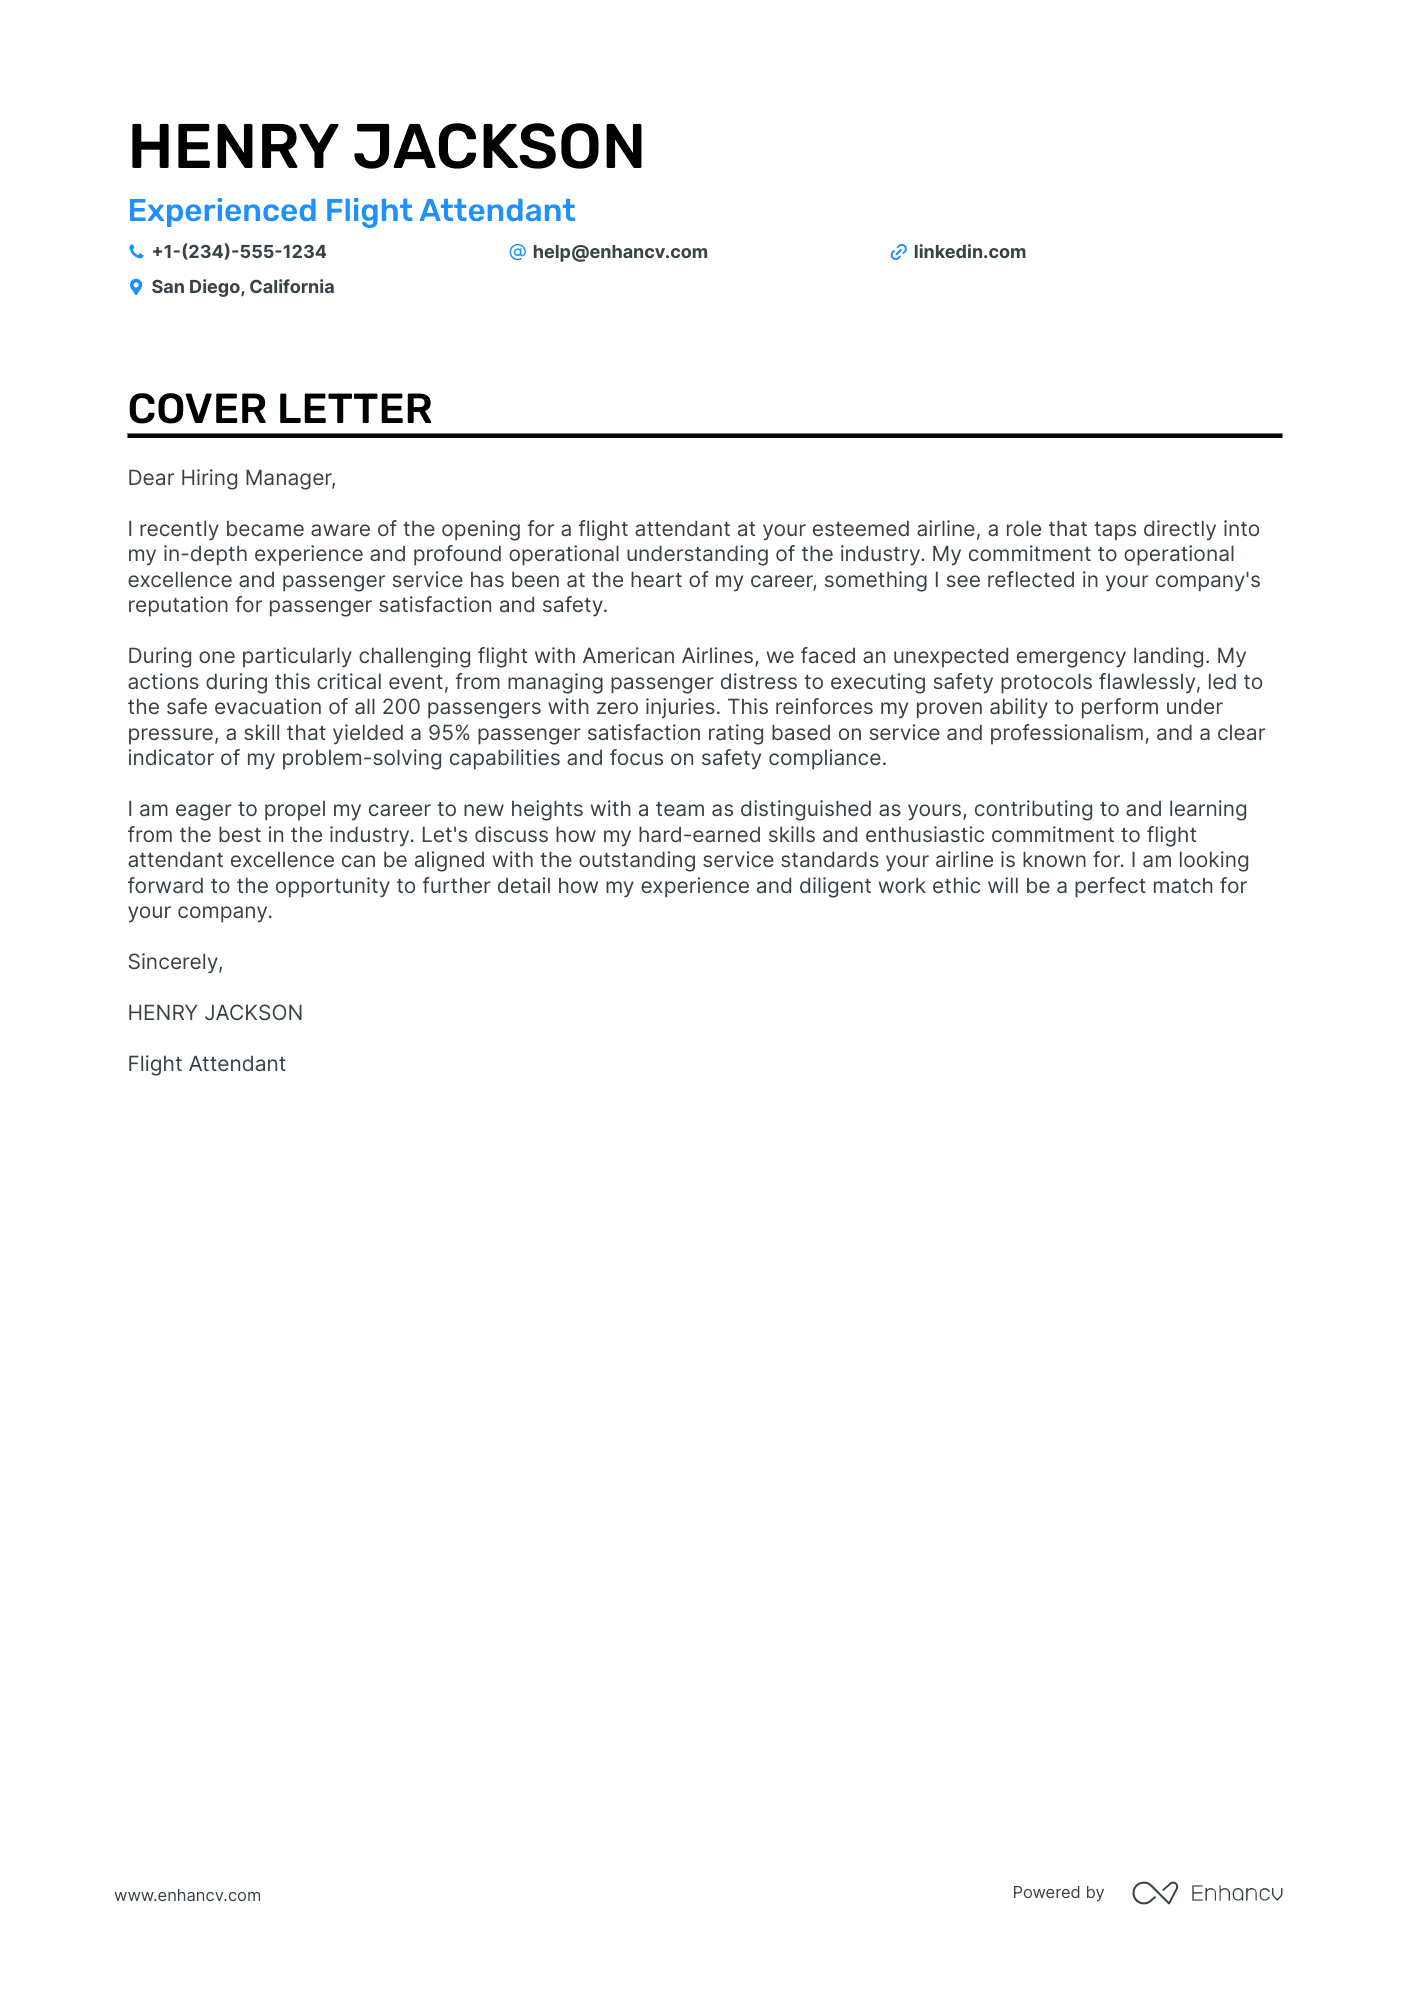 cover letter for flight attendant job sample